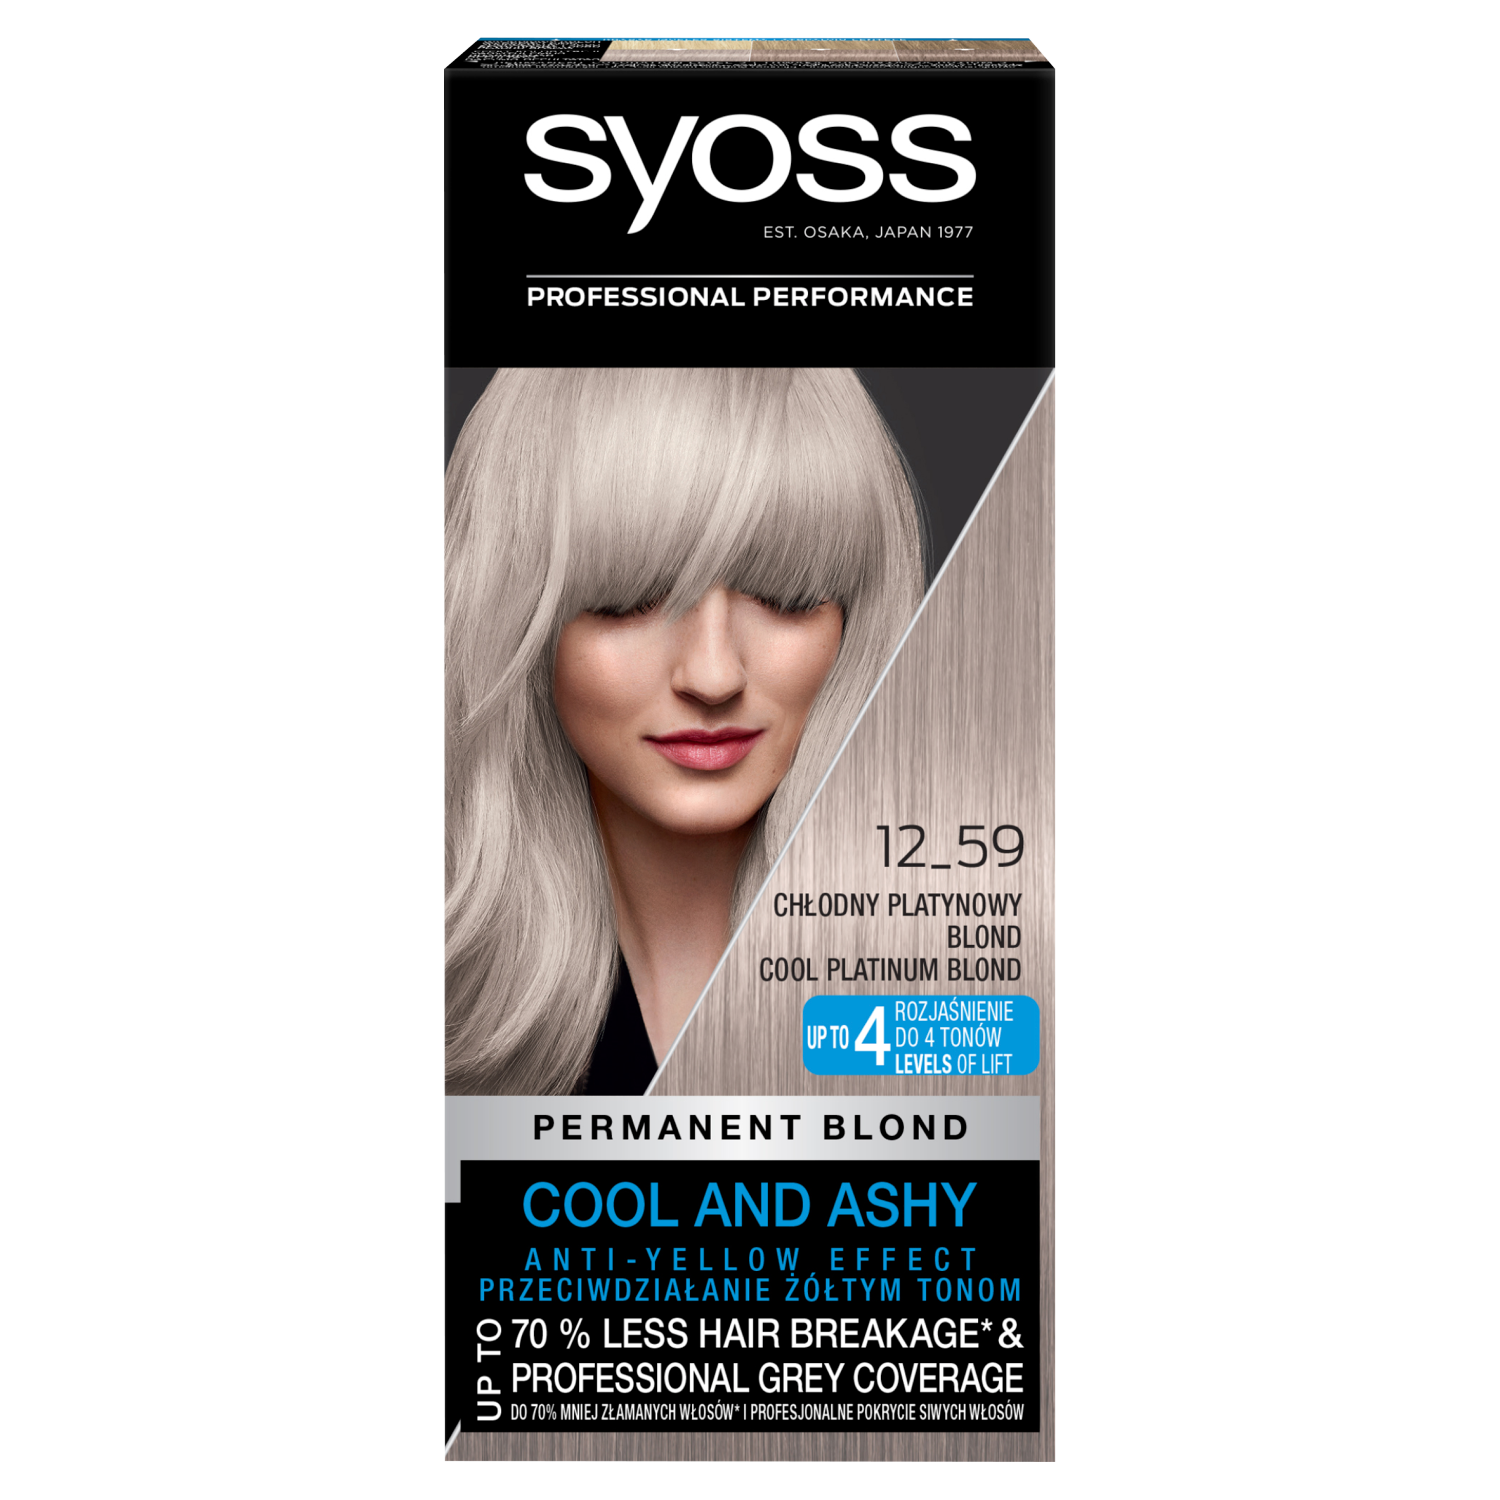 Syoss Blond Cool Blonds краска для волос 12-59 холодный платиновый блонд, 1 упаковка